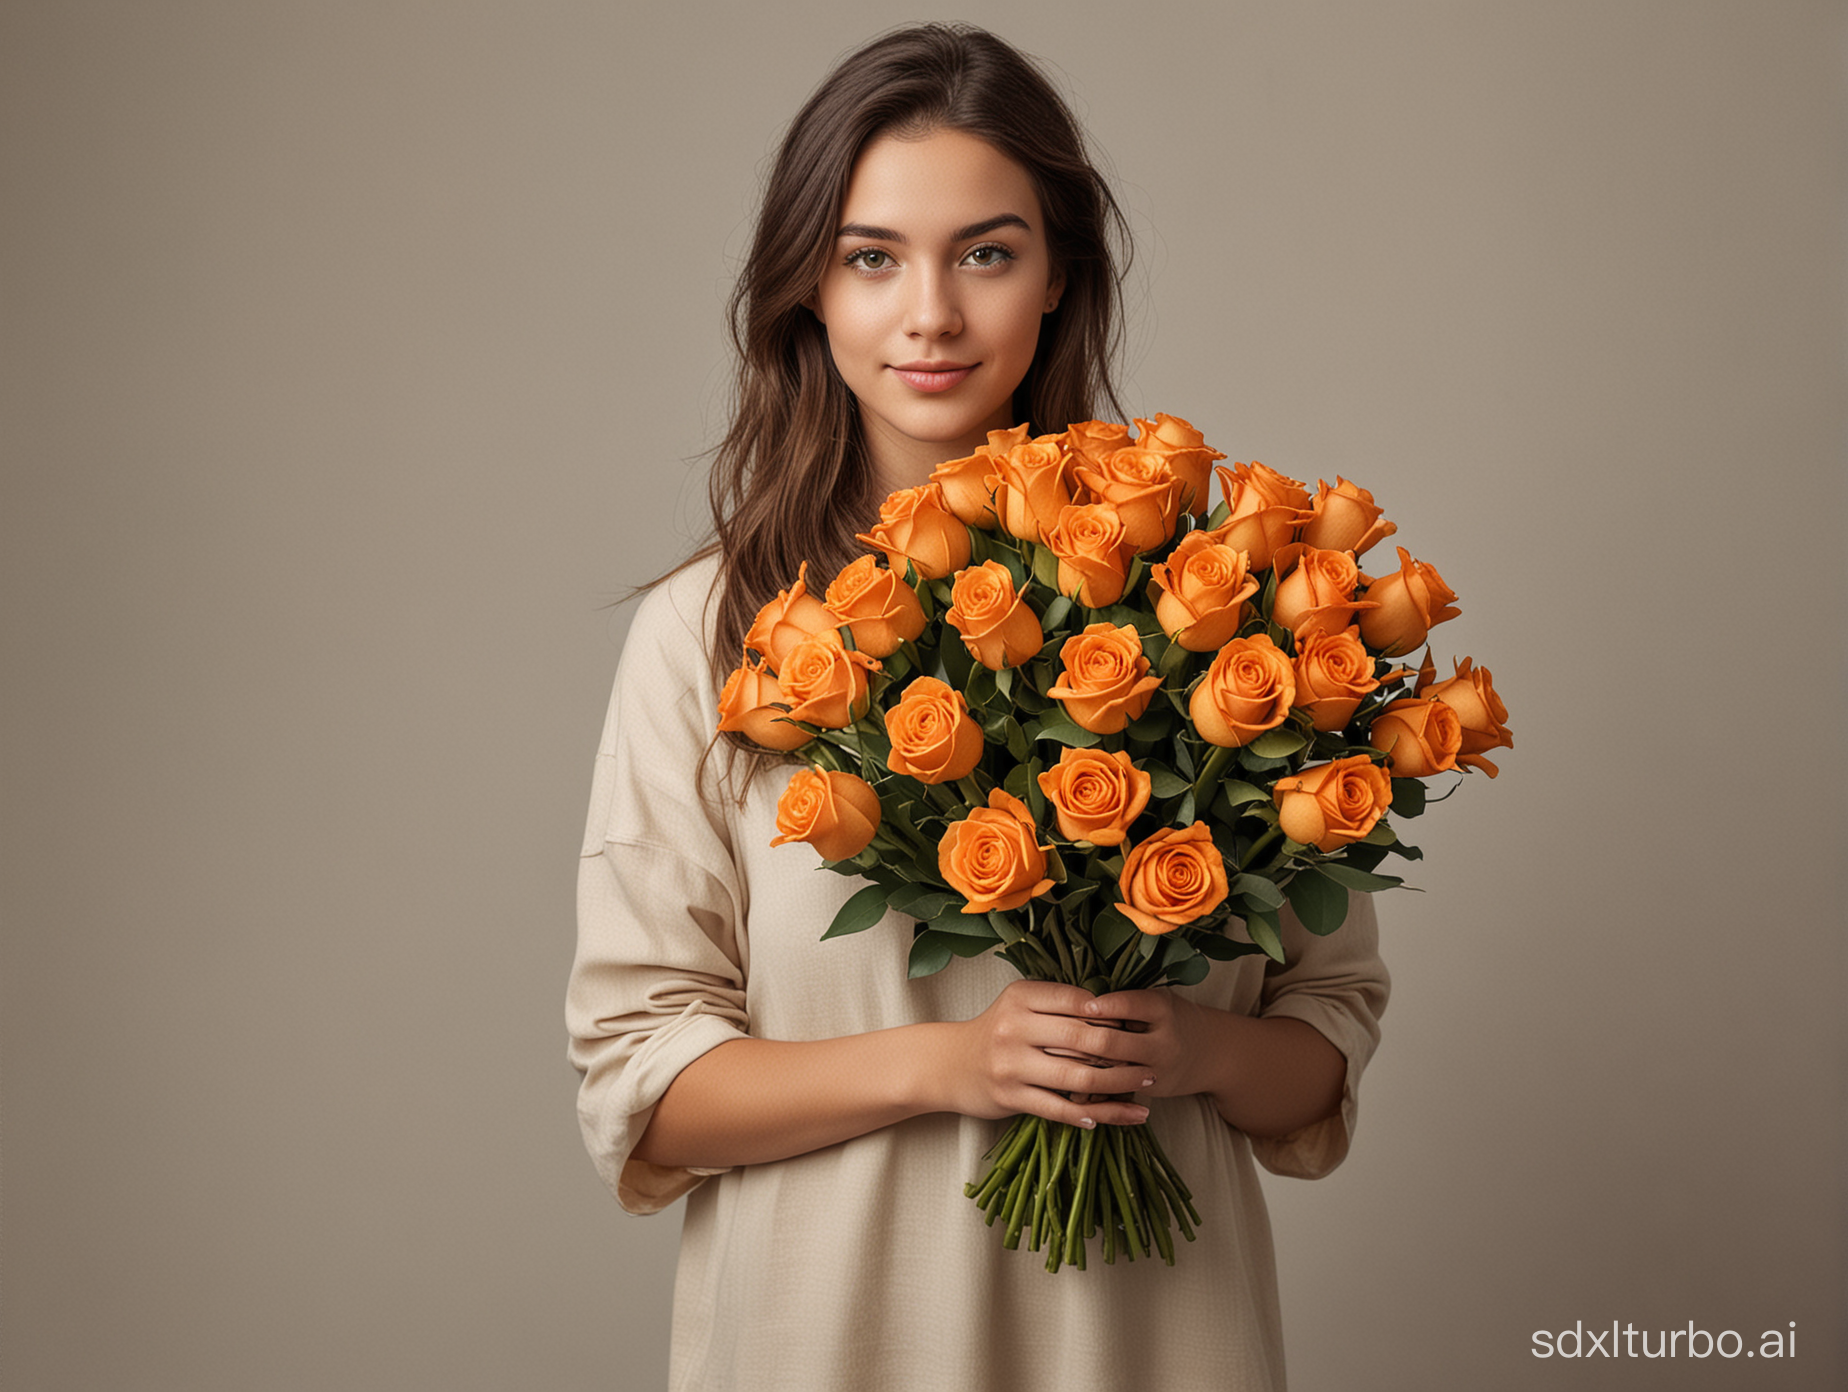 Создай изображение реалистичного фото девушки в полный рост, которая держит букет из 101 оранжевой розы и много букетов похожих вокруг